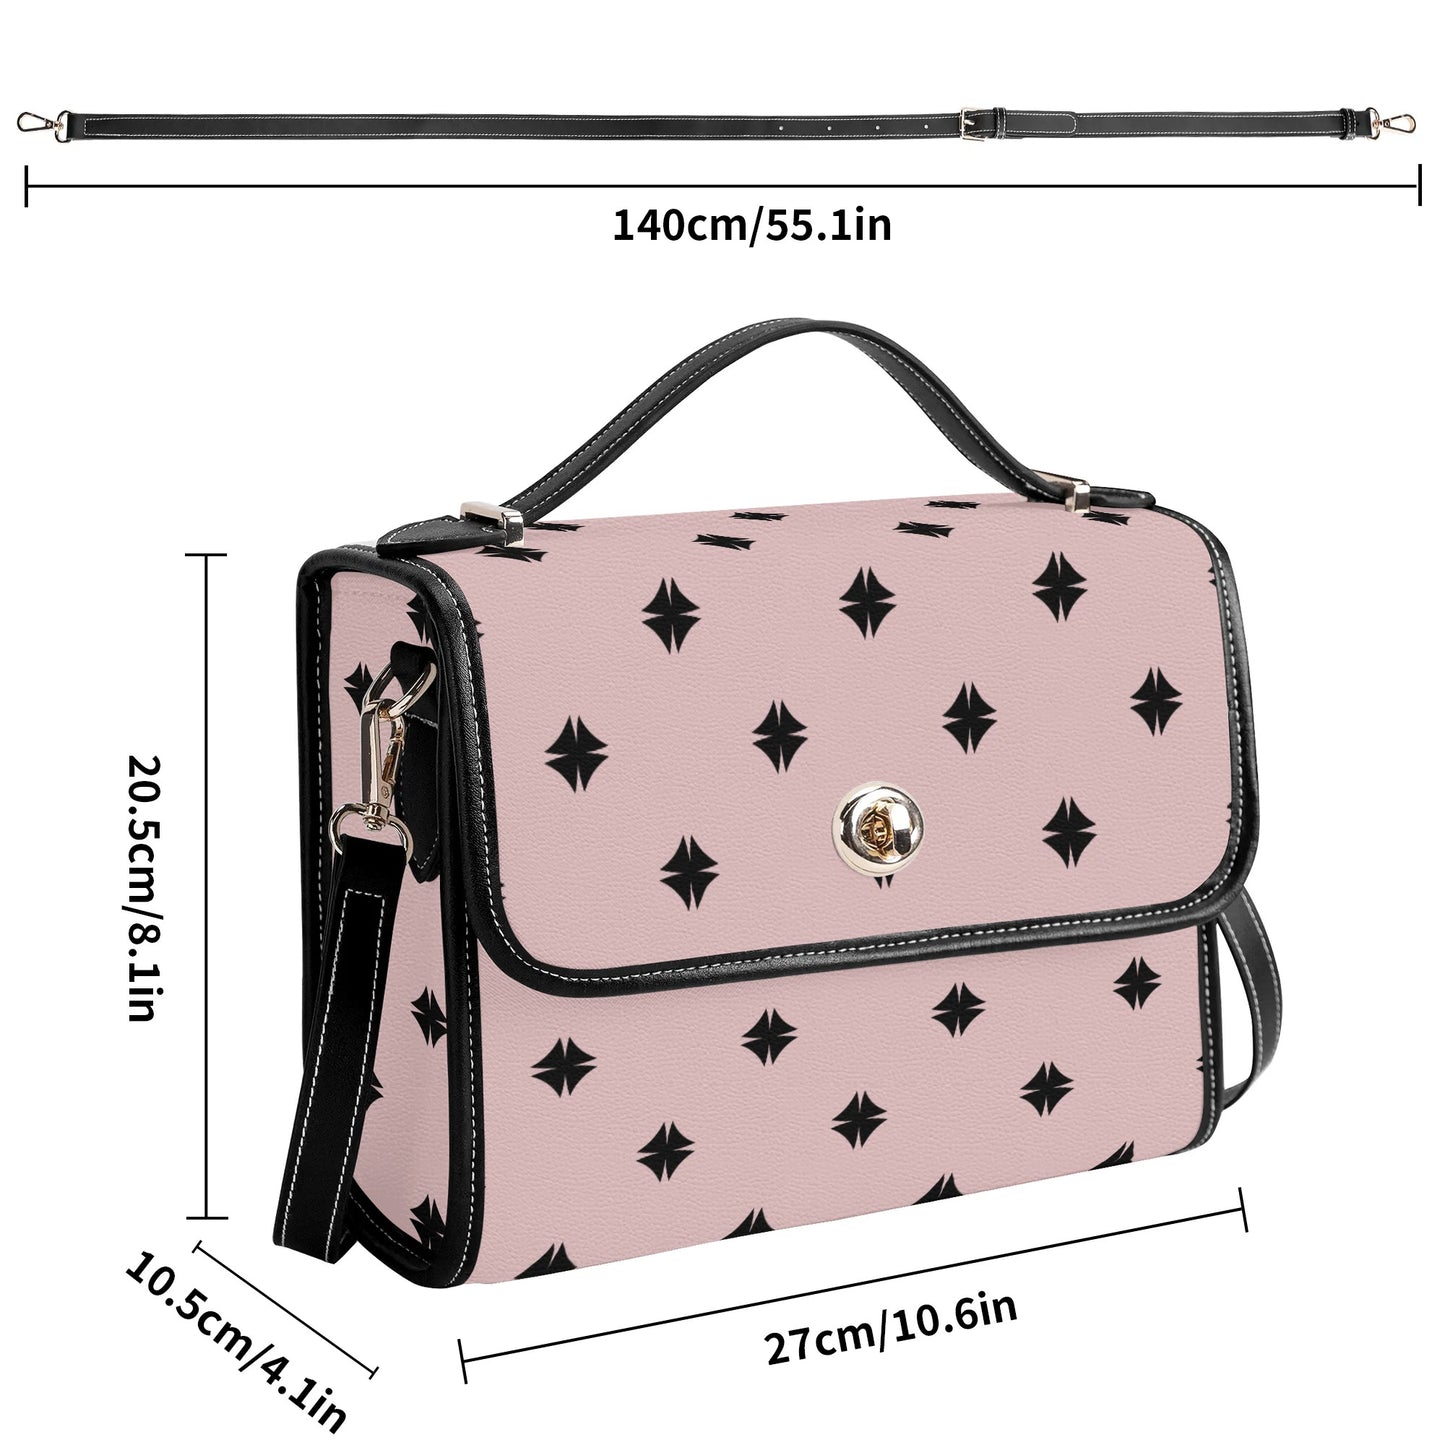 Pink Patterned Leather Satchel Bag